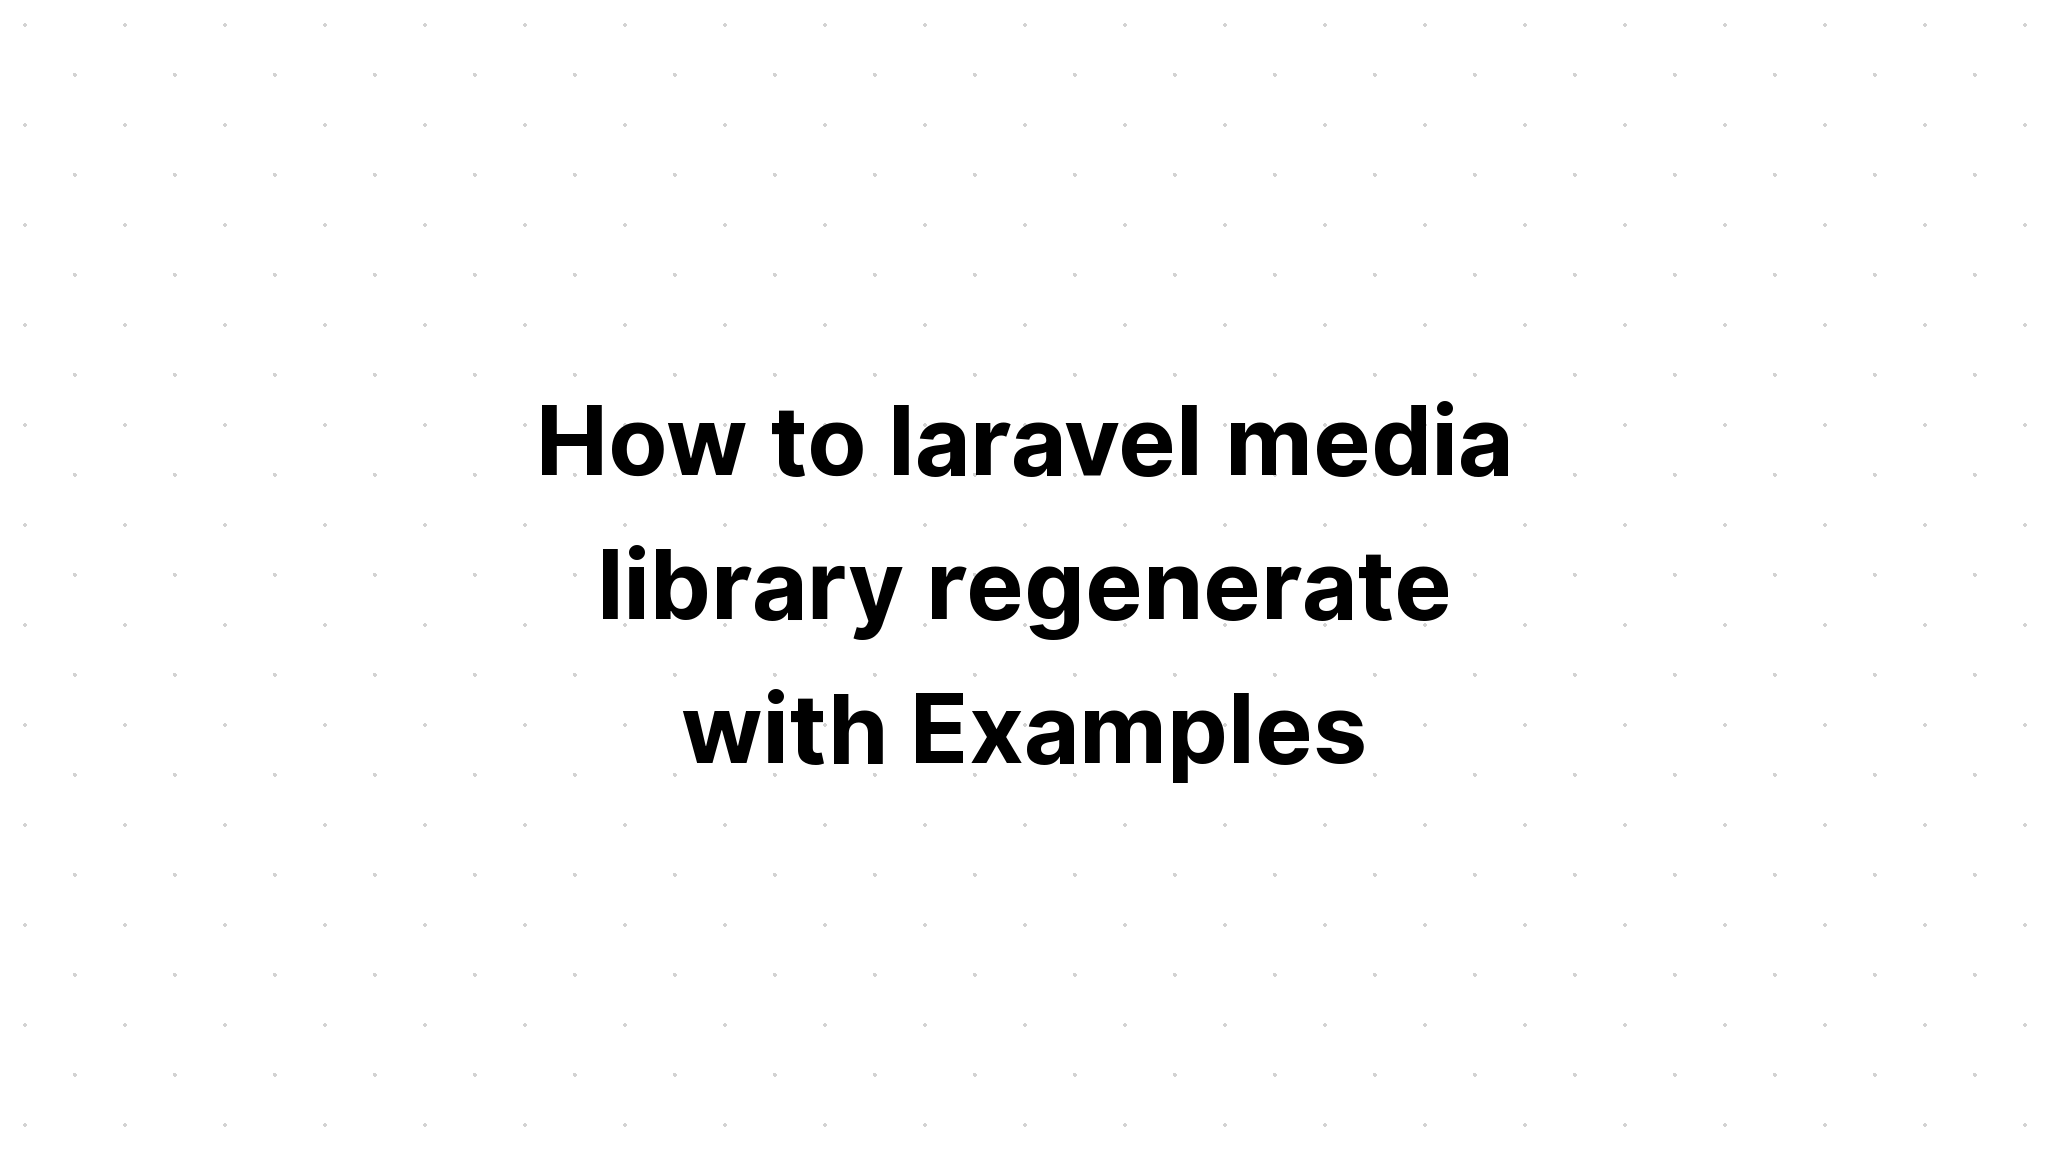 Cách tạo lại thư viện phương tiện laravel với các ví dụ